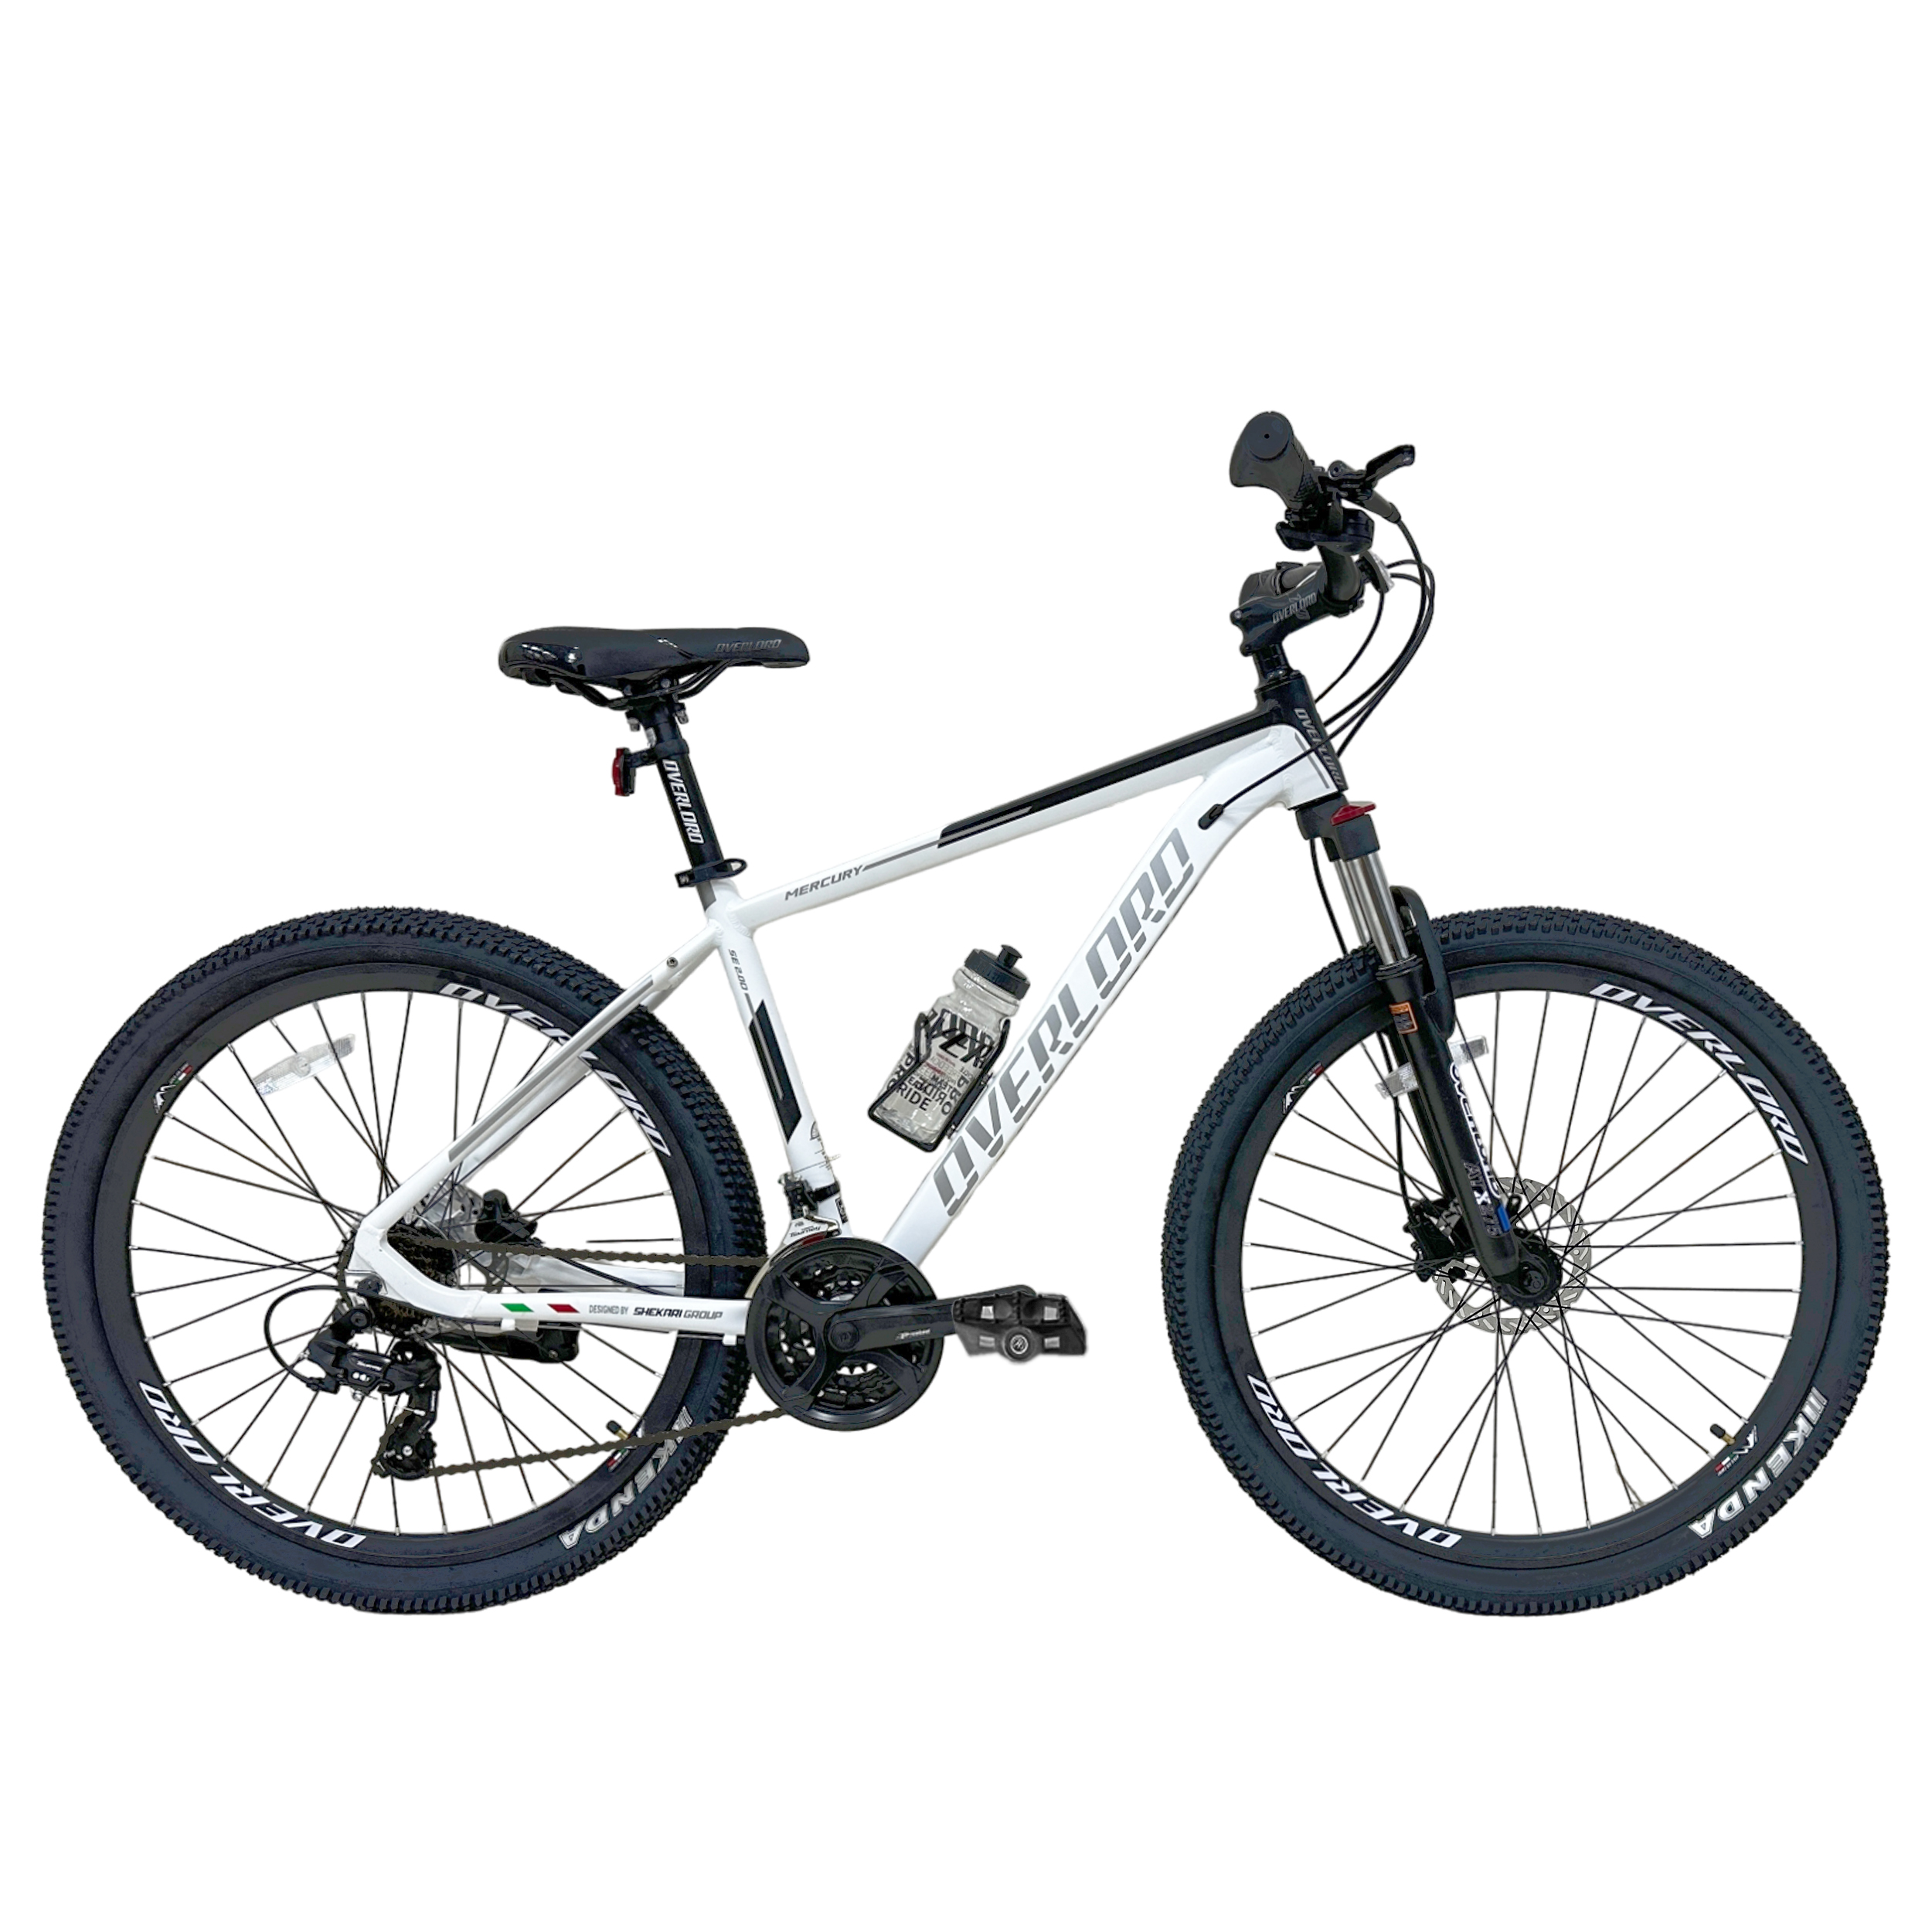 نکته خرید - قیمت روز دوچرخه کوهستان اورلورد مدل MERCURY SE 2.0 هیدرولیکی سایز طوقه 27.5 خرید